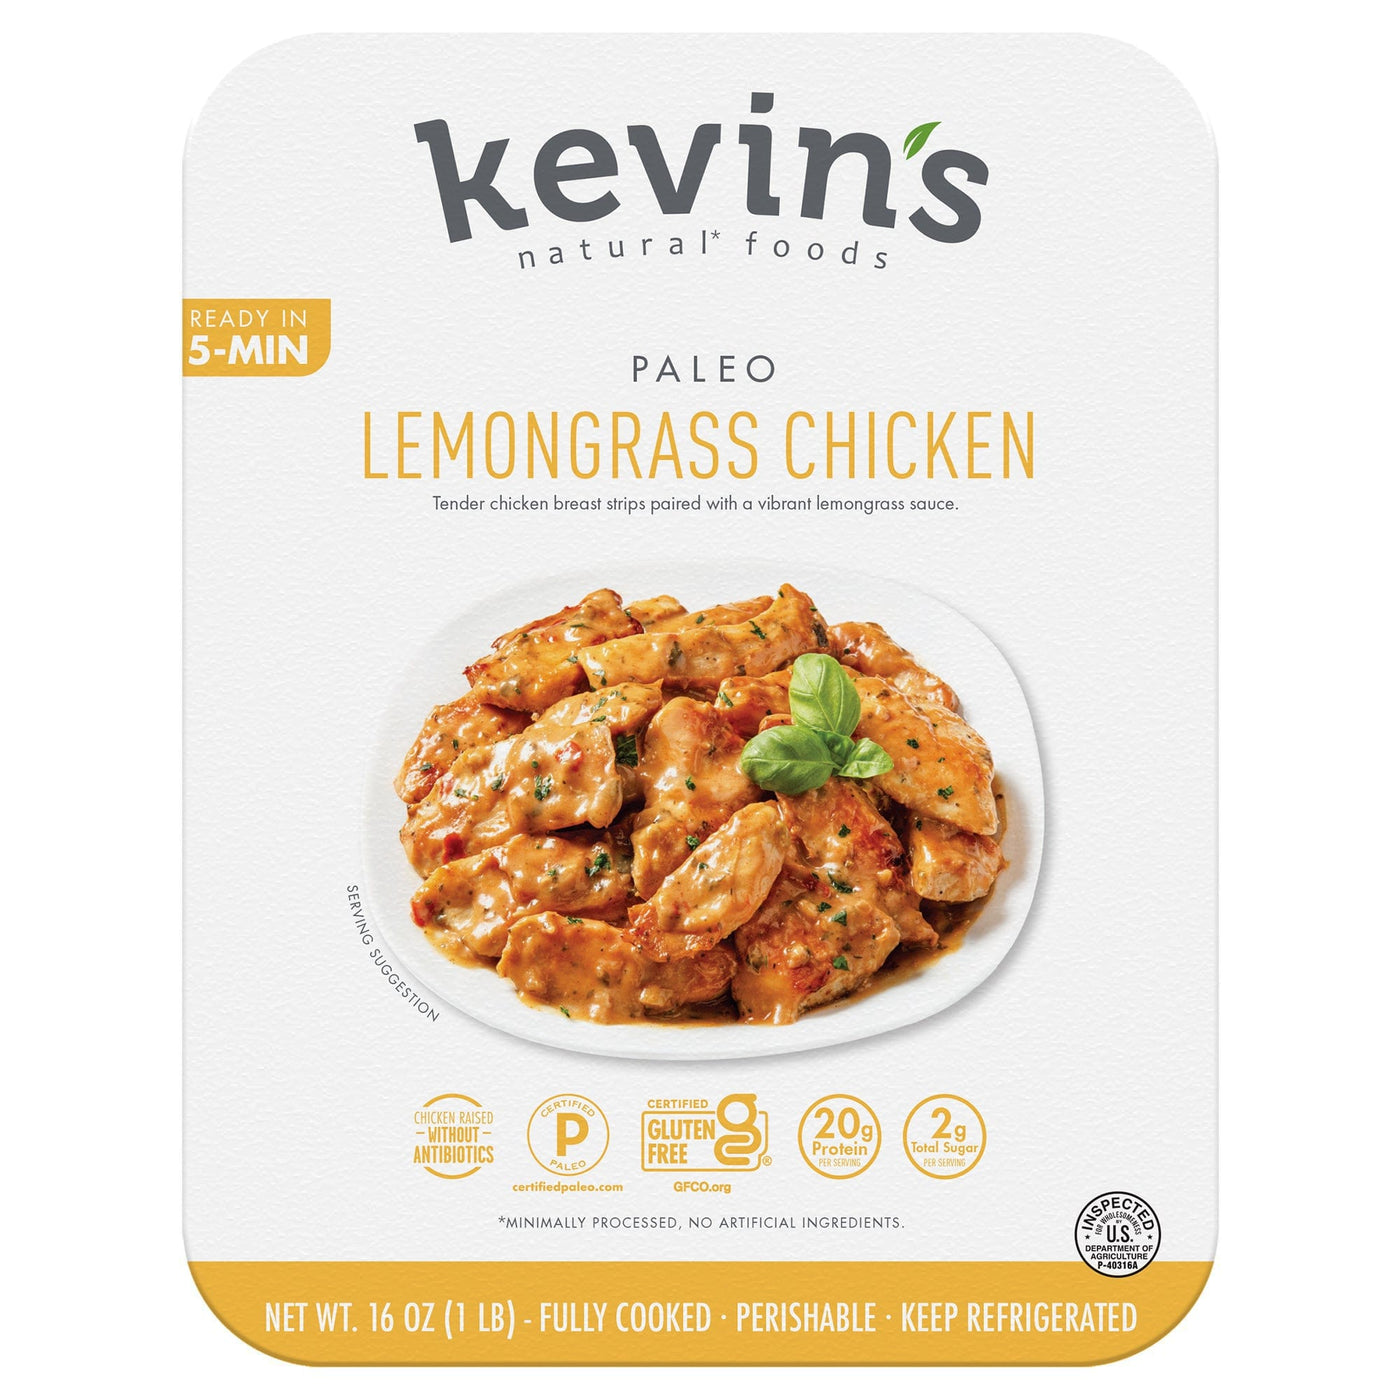 Lemongrass Chicken